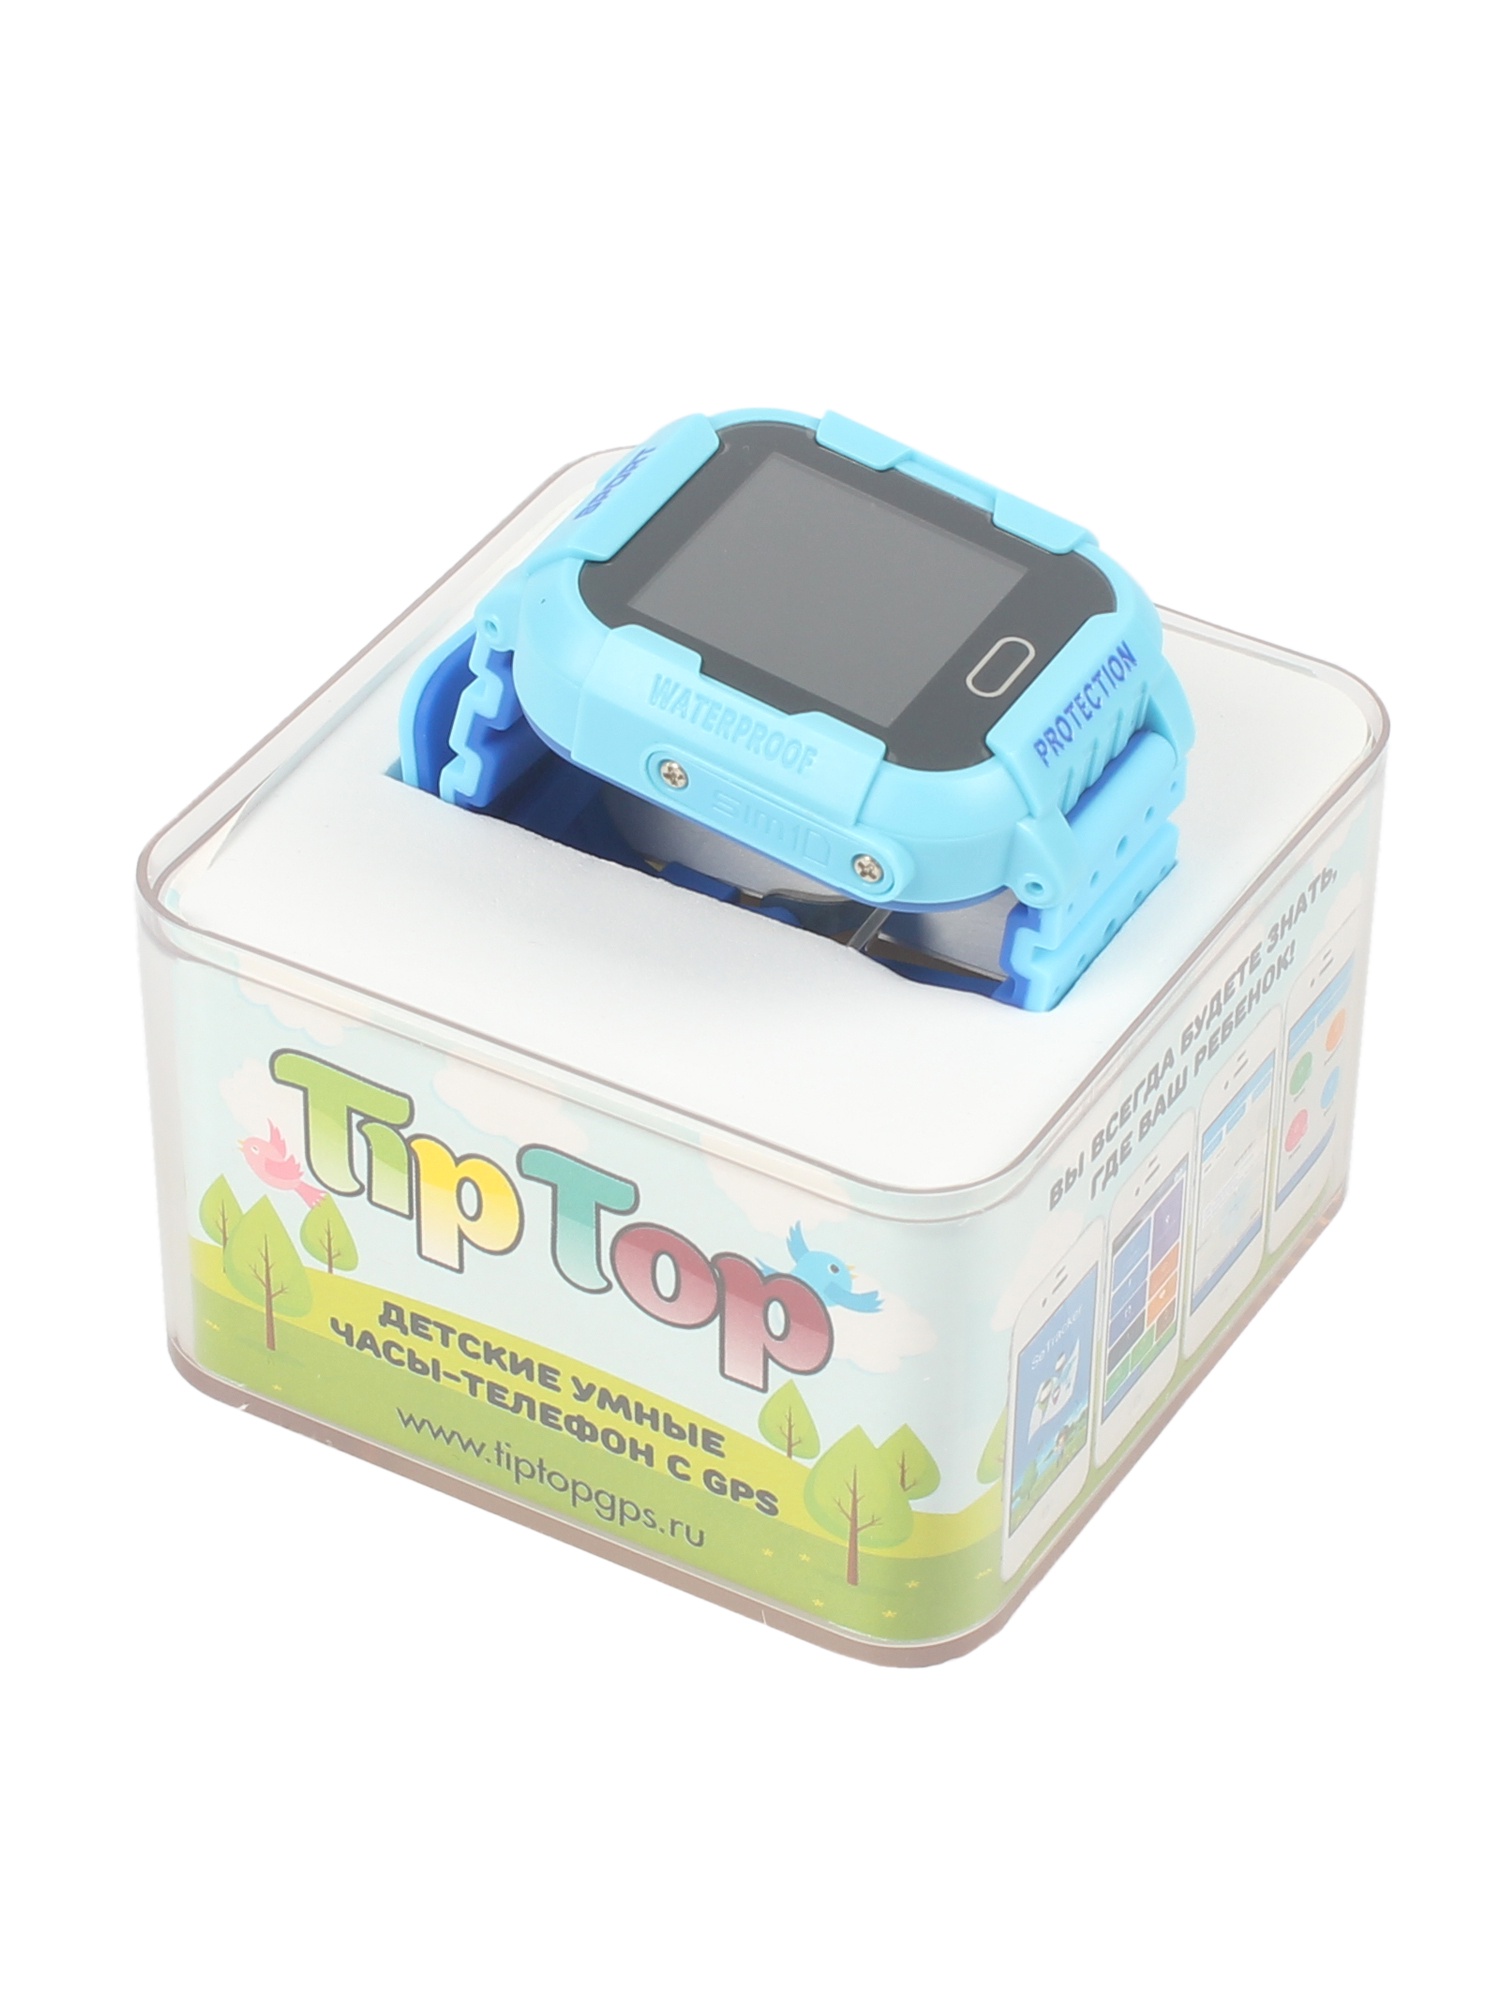 фото Детские умные часы-телефон КТ03 IP67 TipTop Голубые, синие